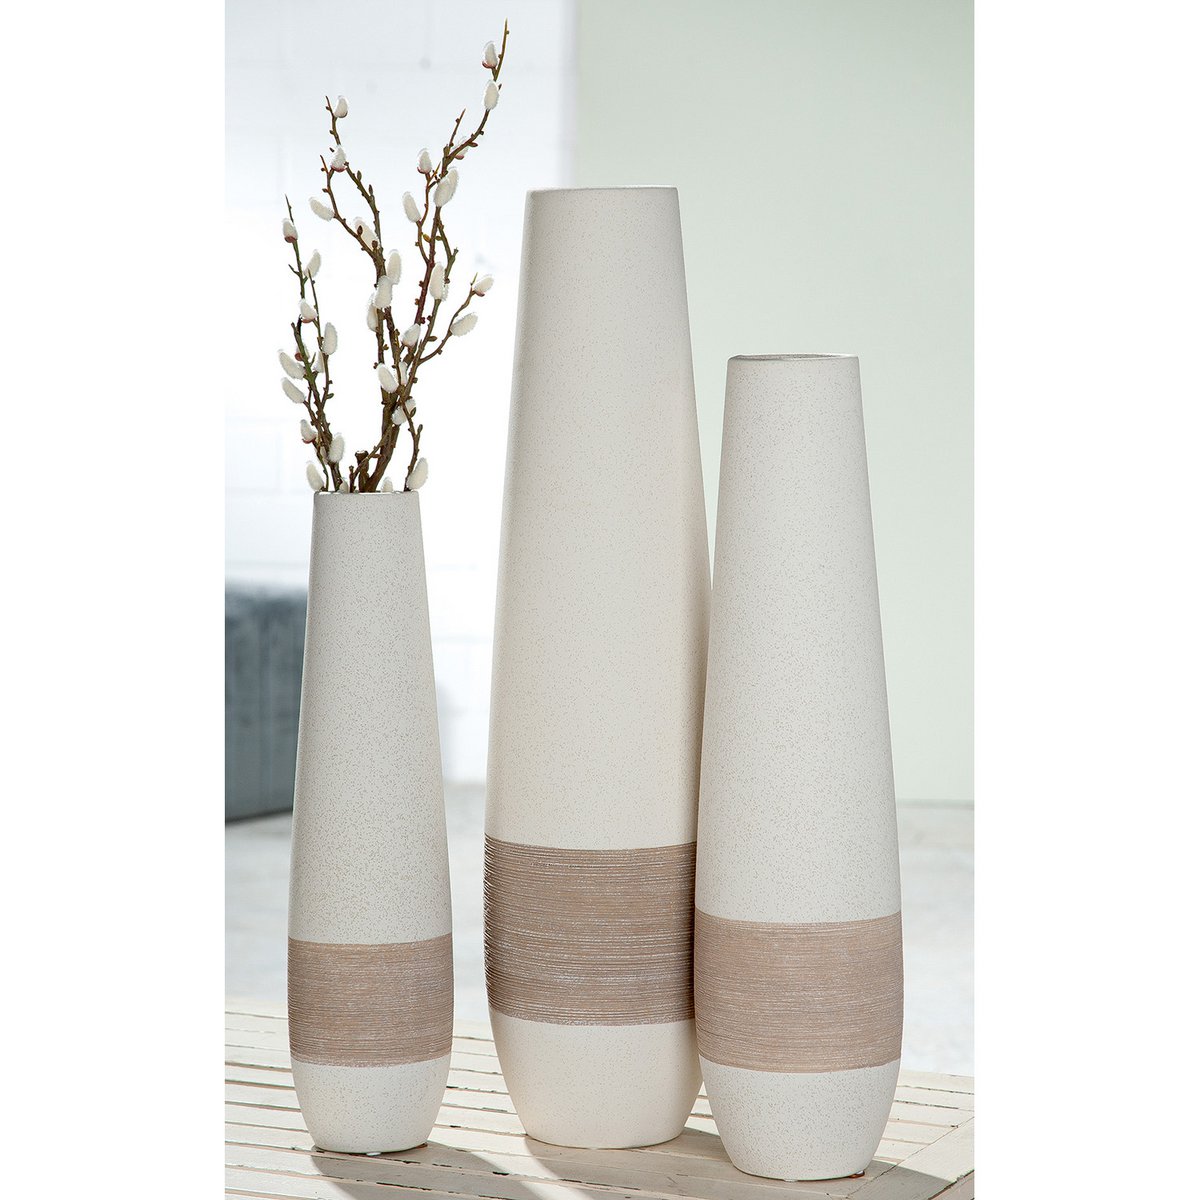 Vase, Blumenvase, Bodenvase OLBIA in weiß-creme aus Keramik